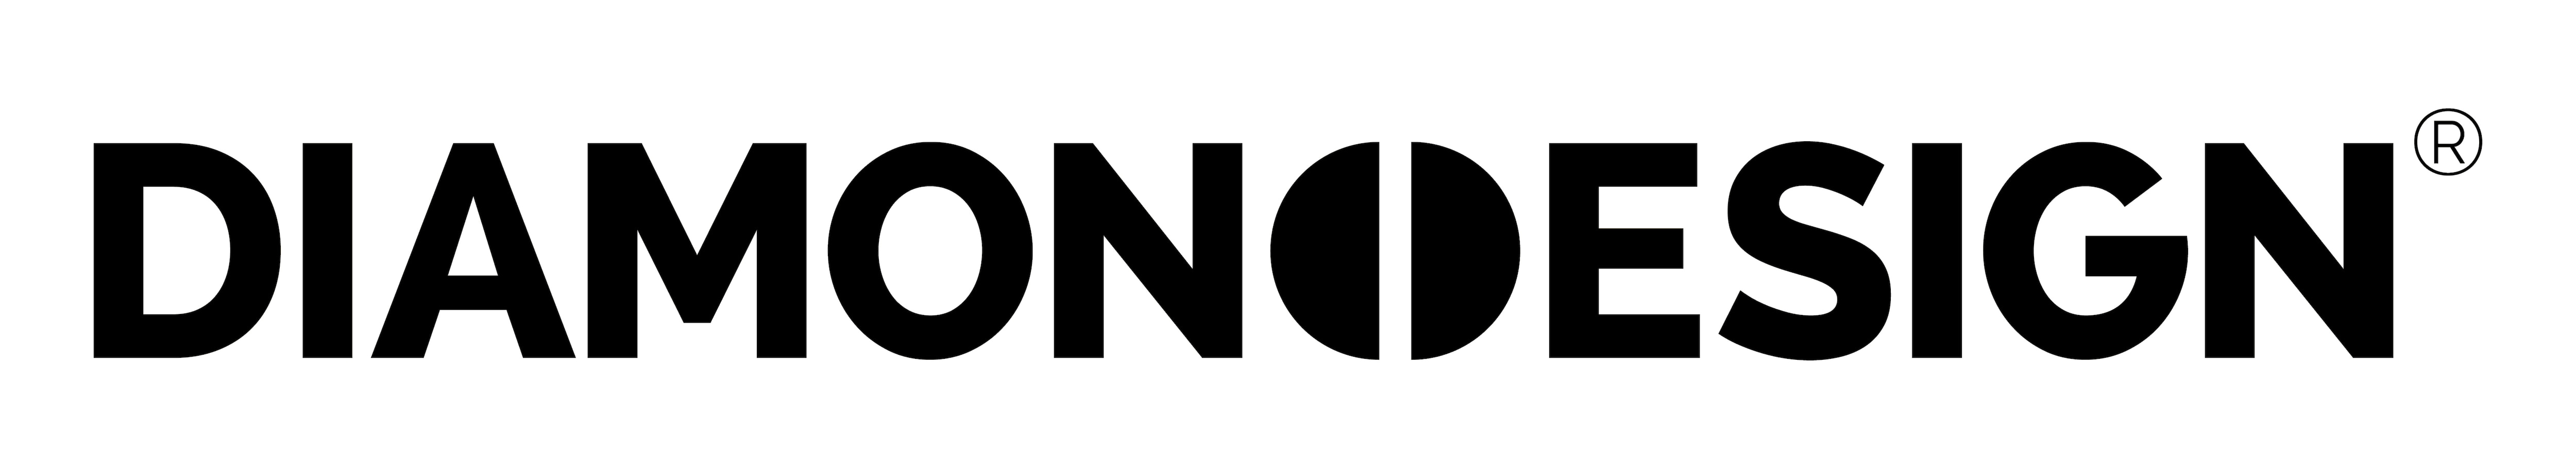 logo_dd_cerne.jpg